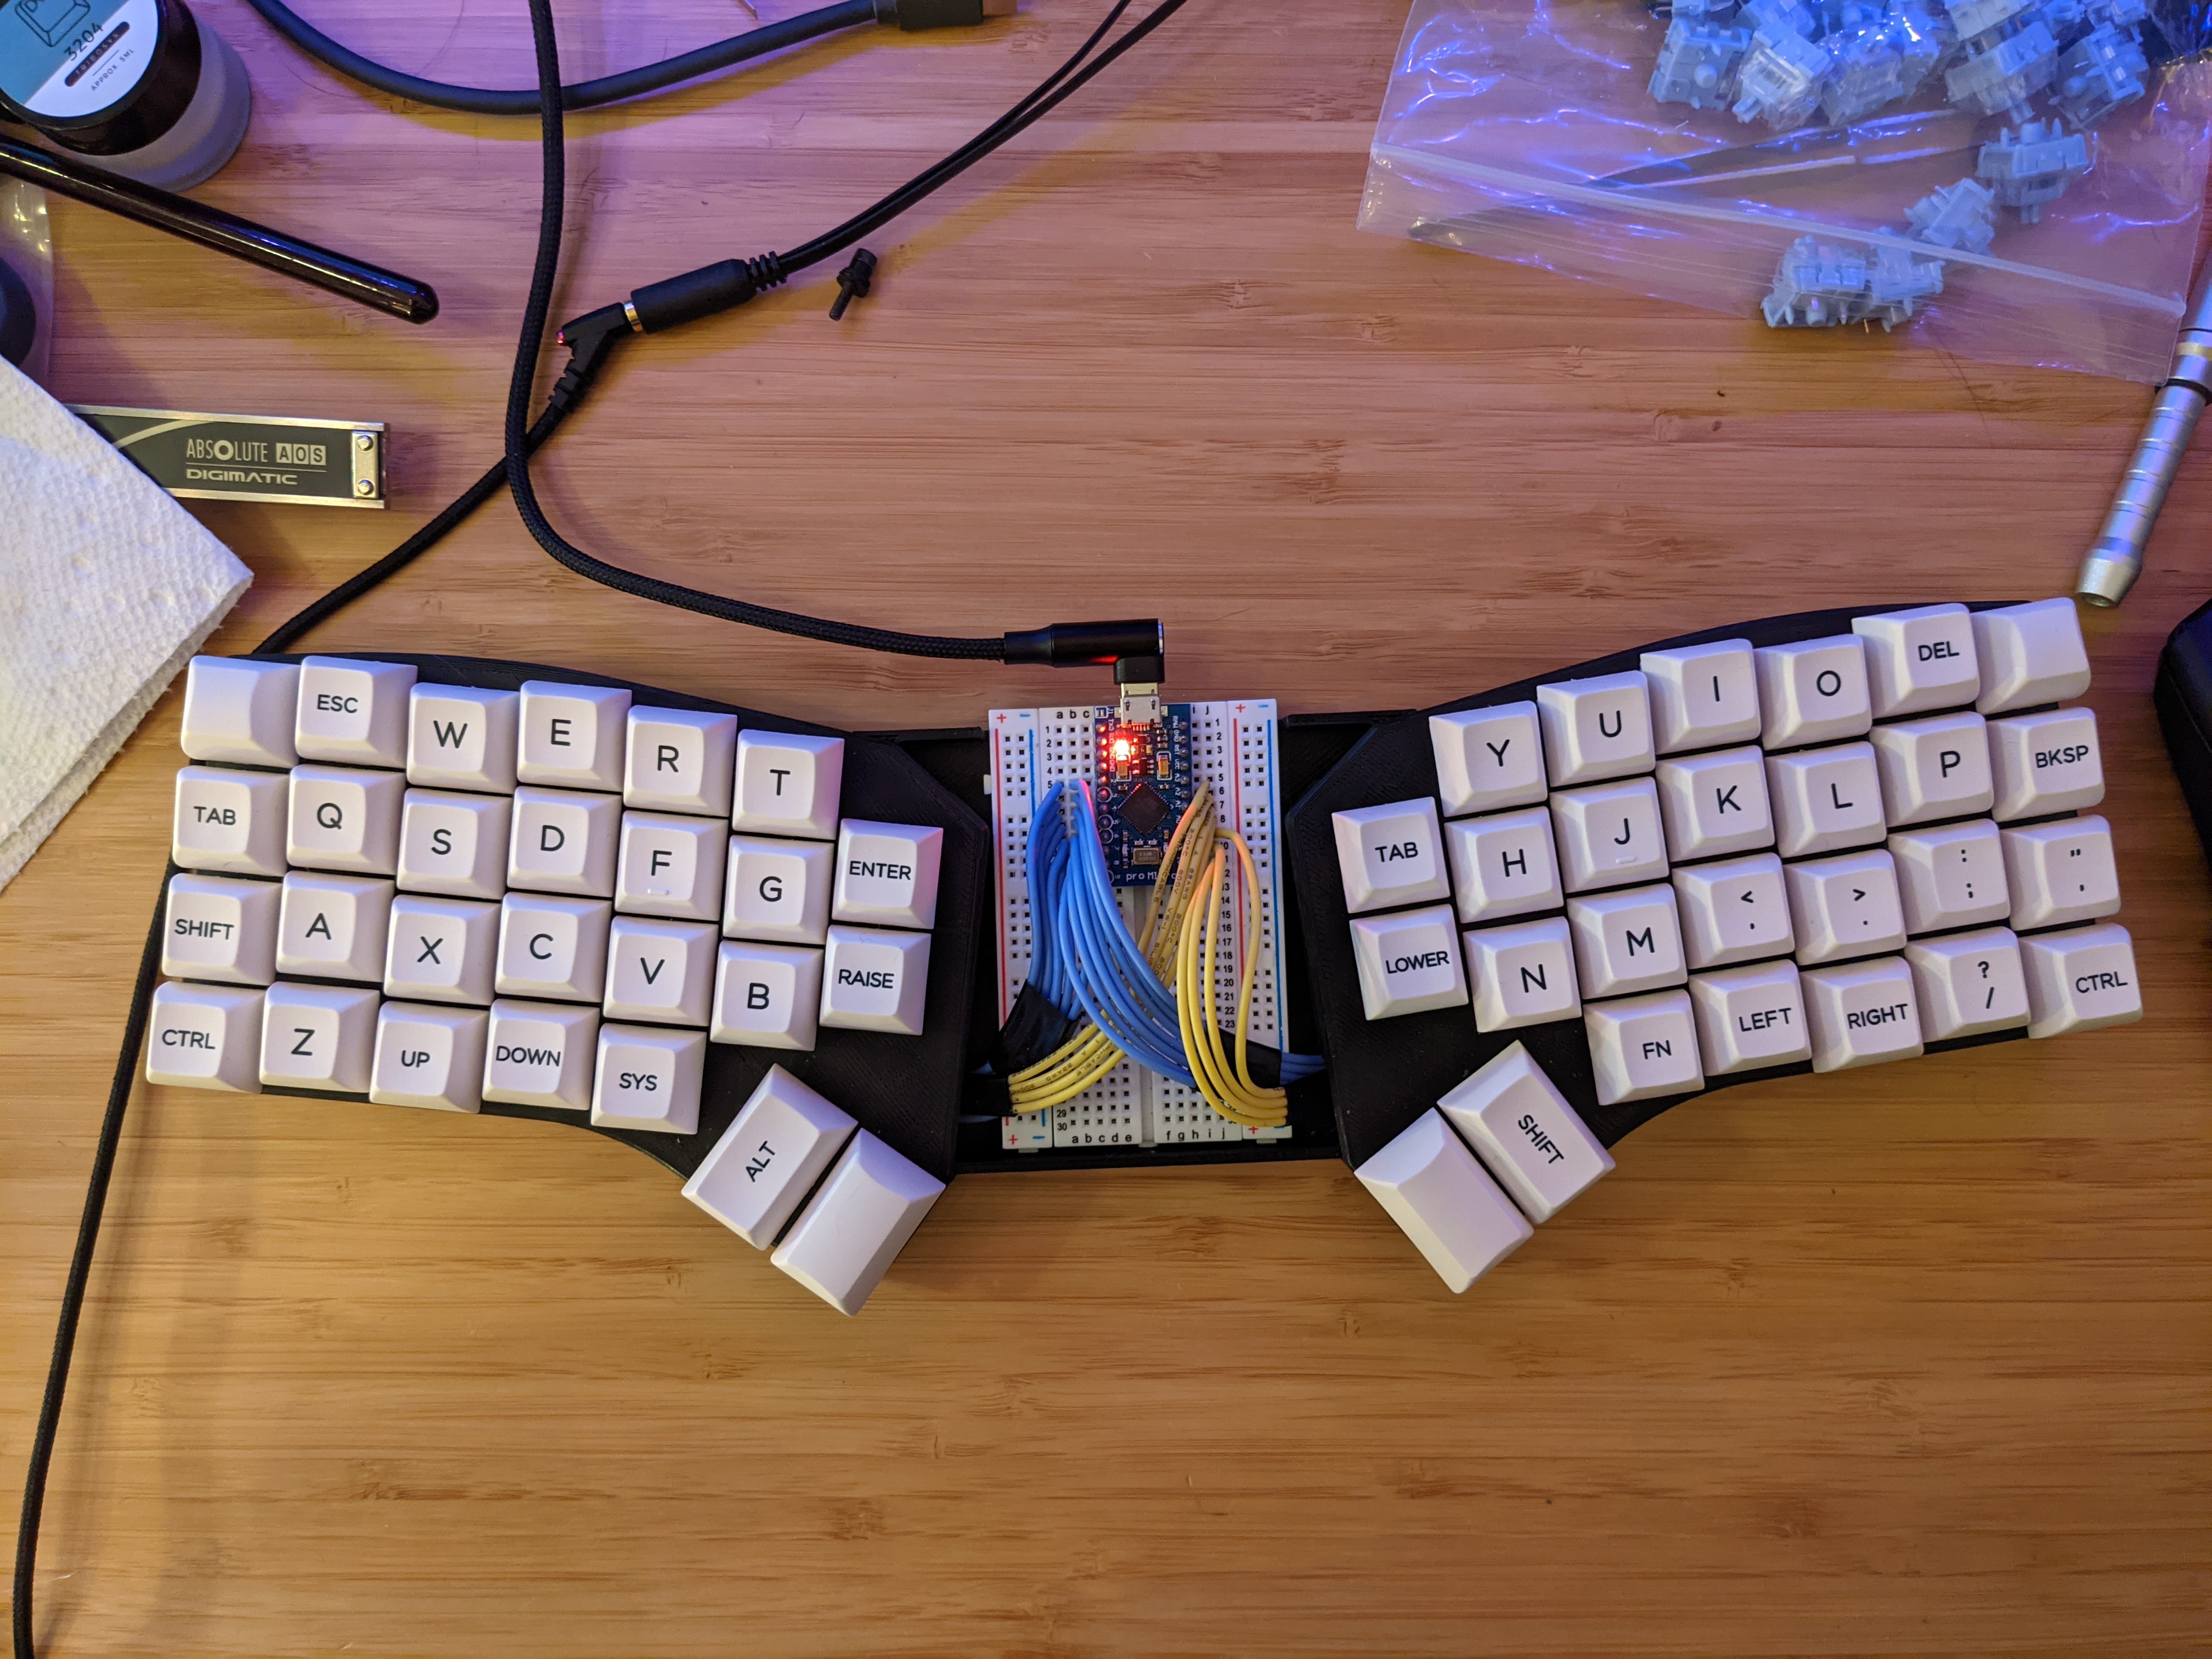 Completed keyboard v2